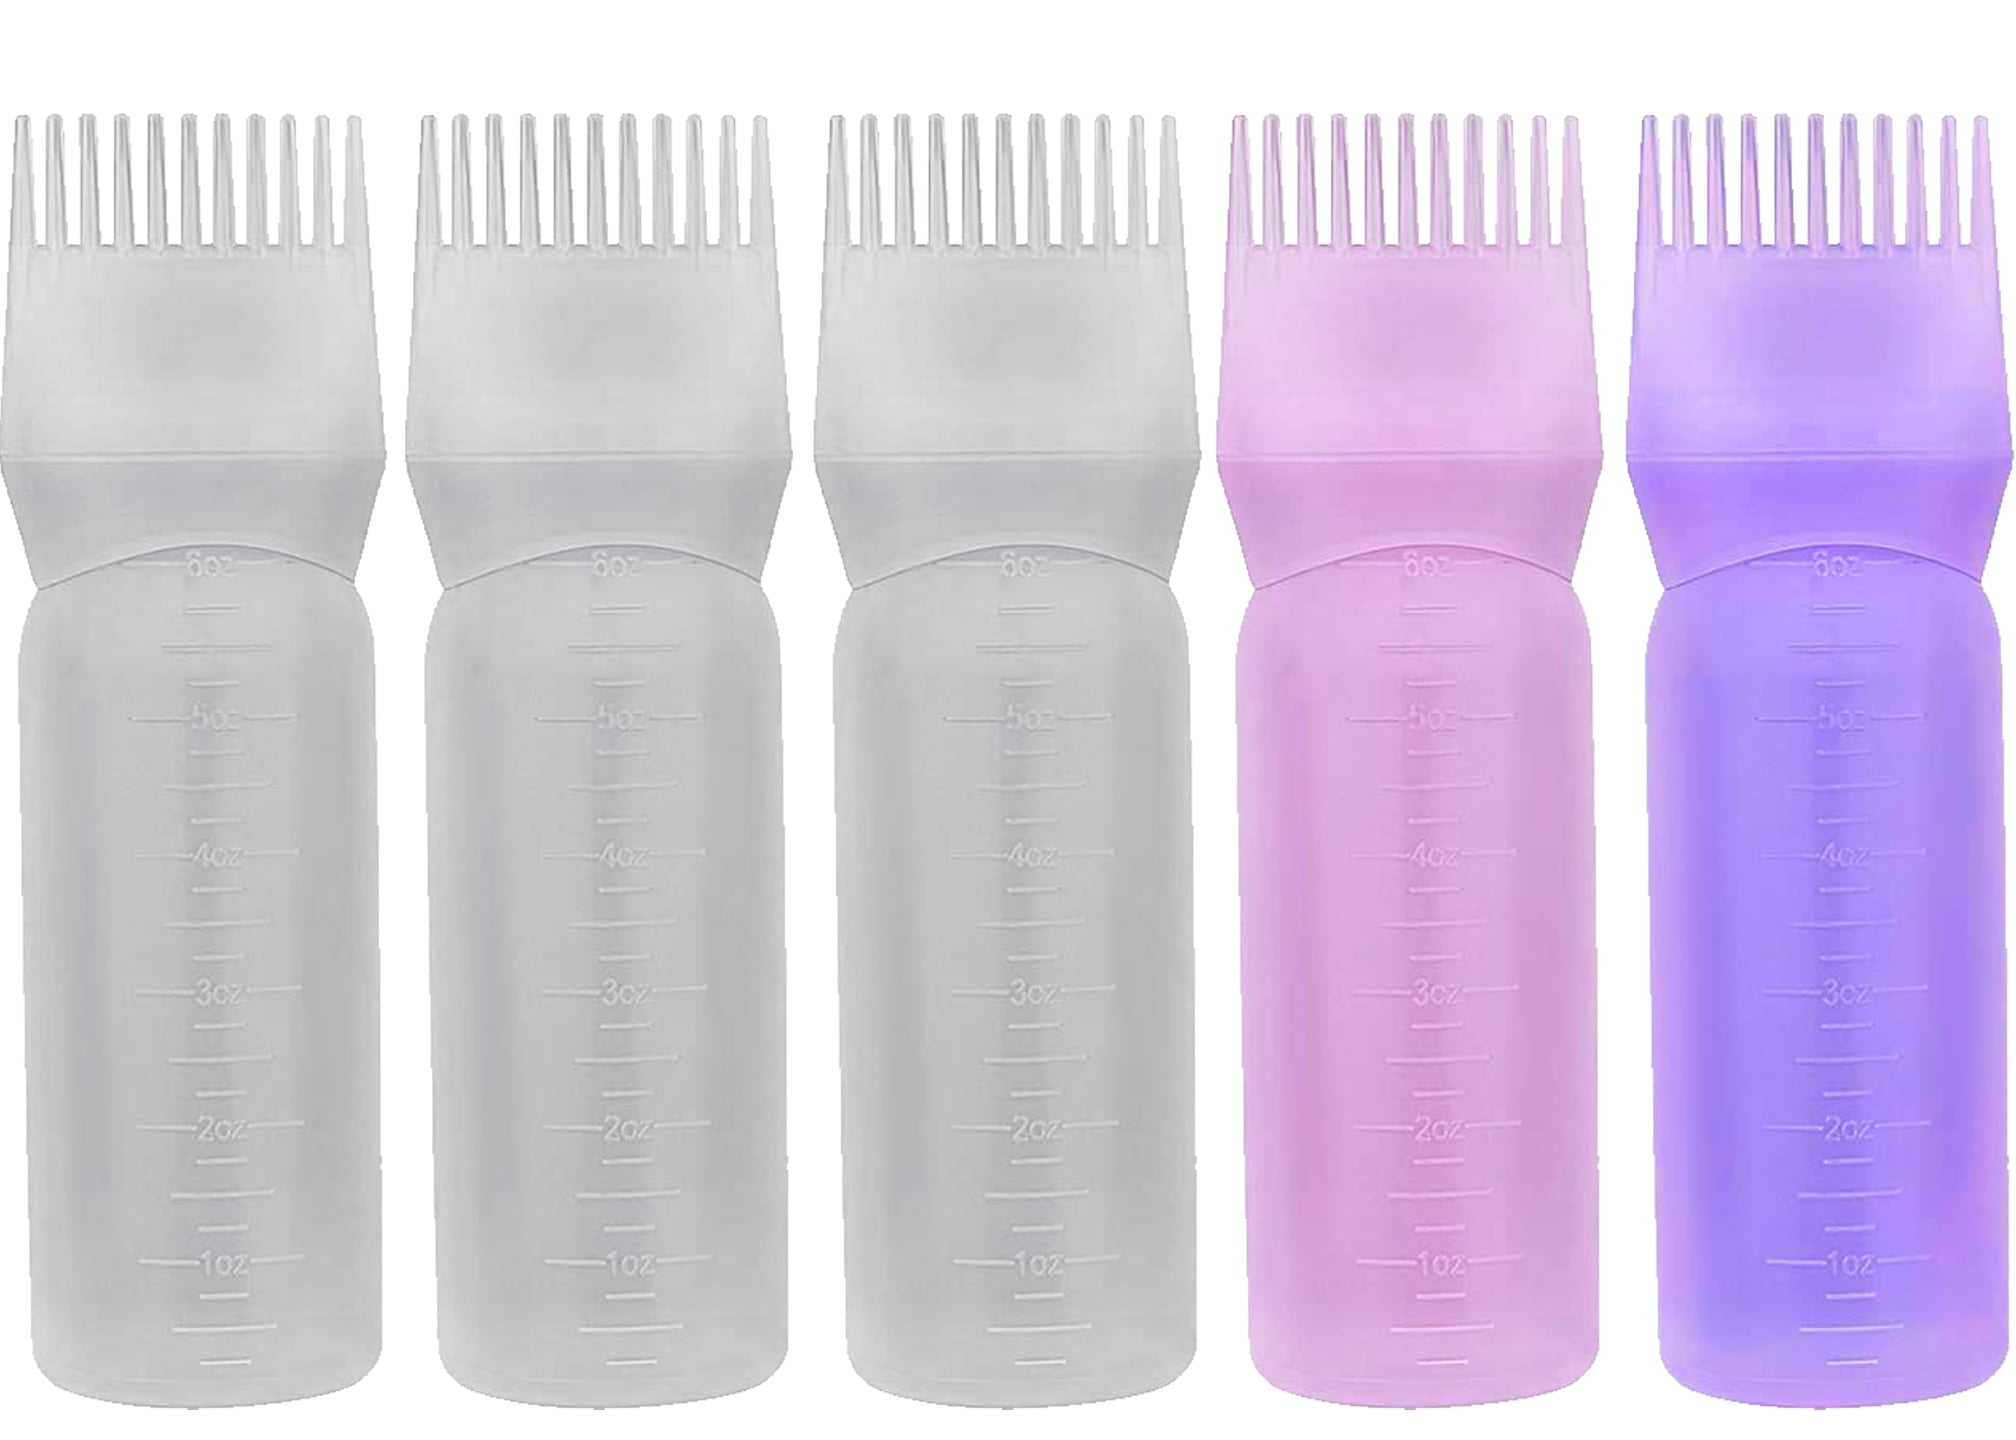 Root Comb Applicator Bottle for Hair Dye, 170ml Bottle Applicator